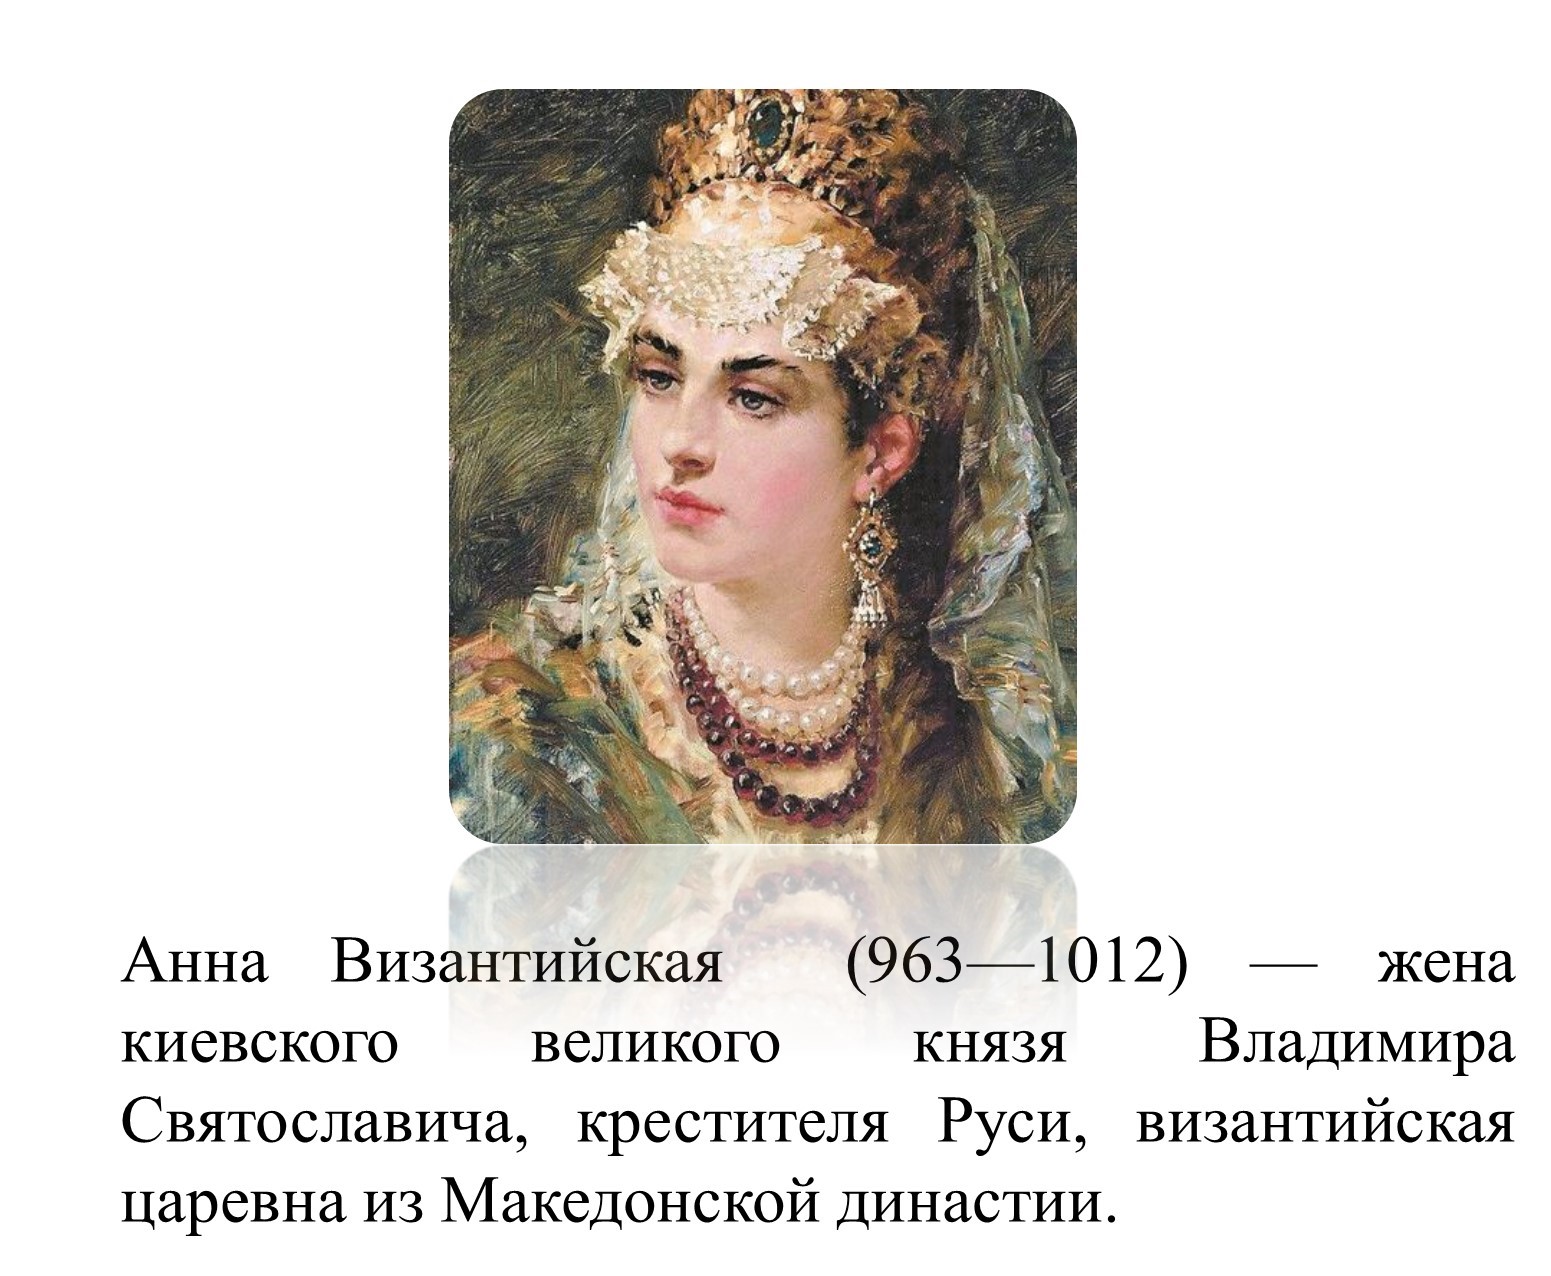 Византийская принцесса Анна